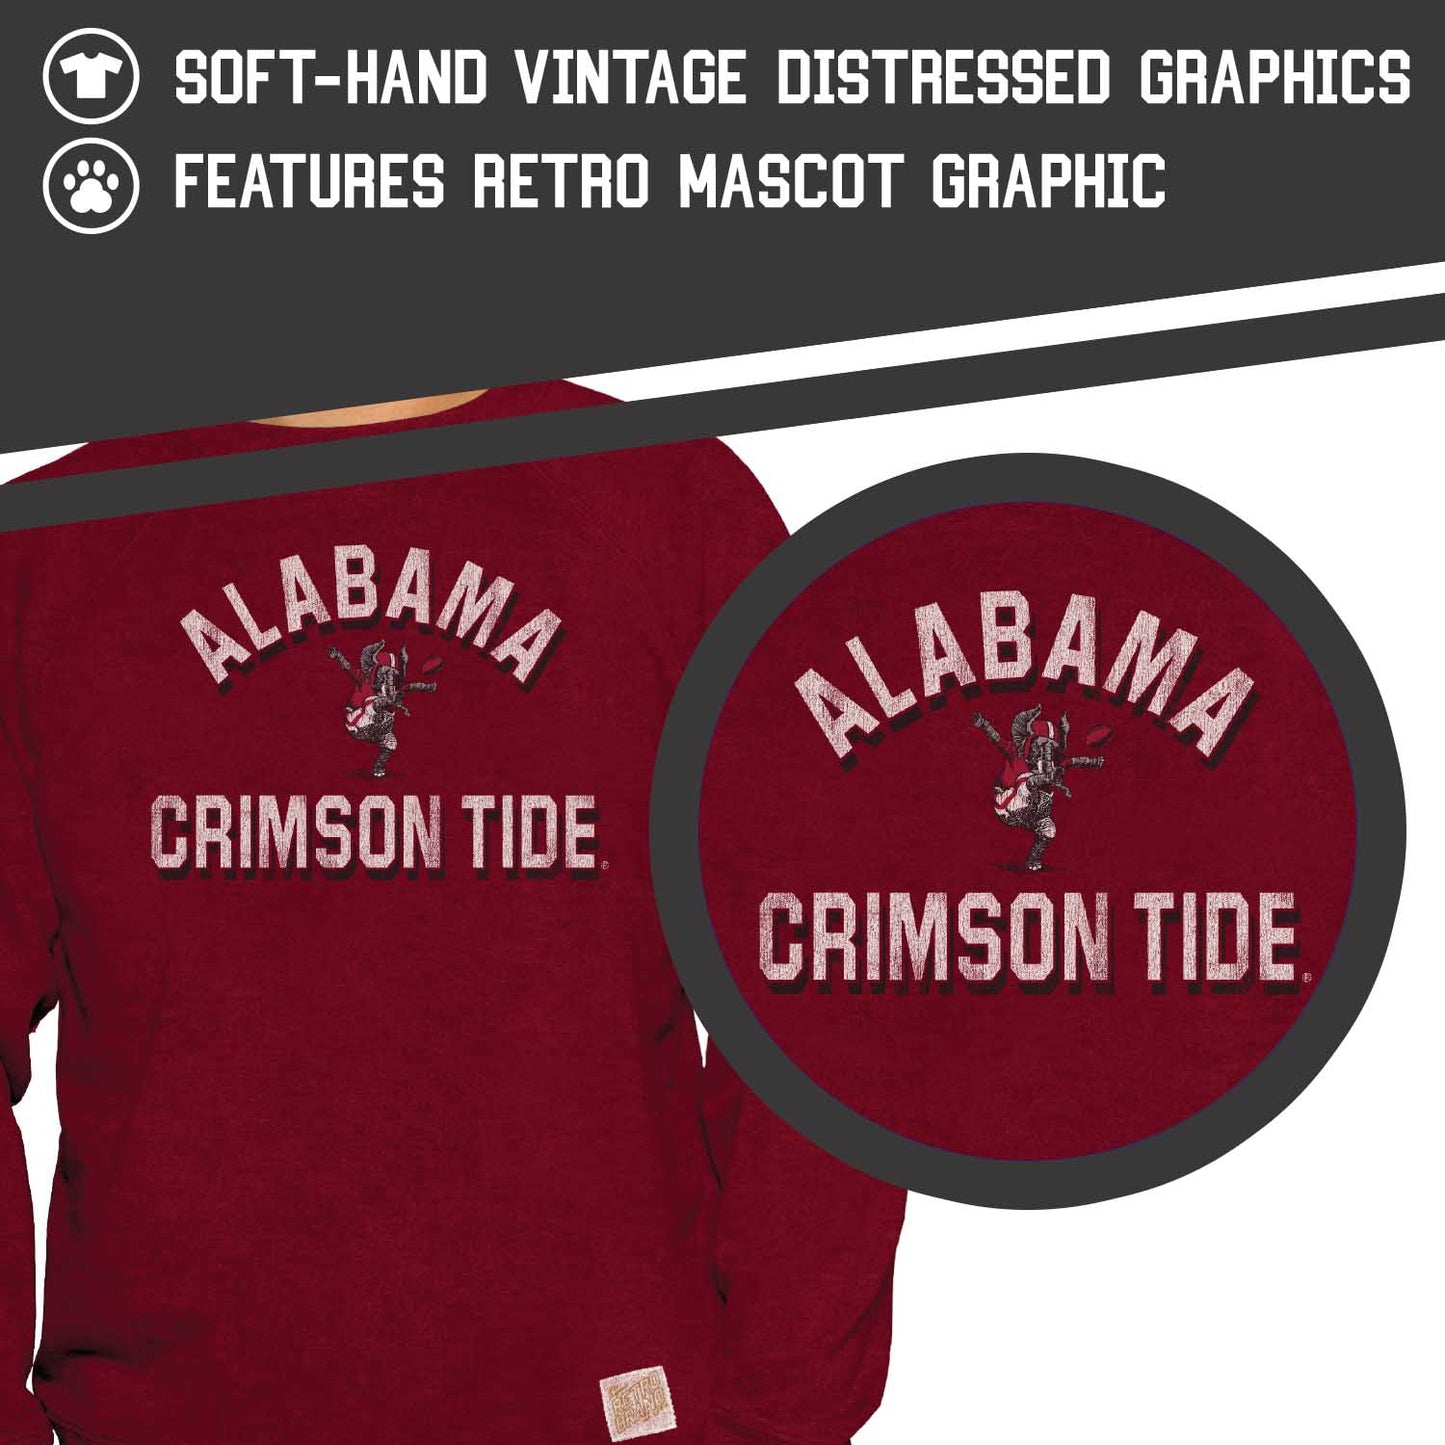 Alabama Crimson Tide Adult University Crewneck - Crimson